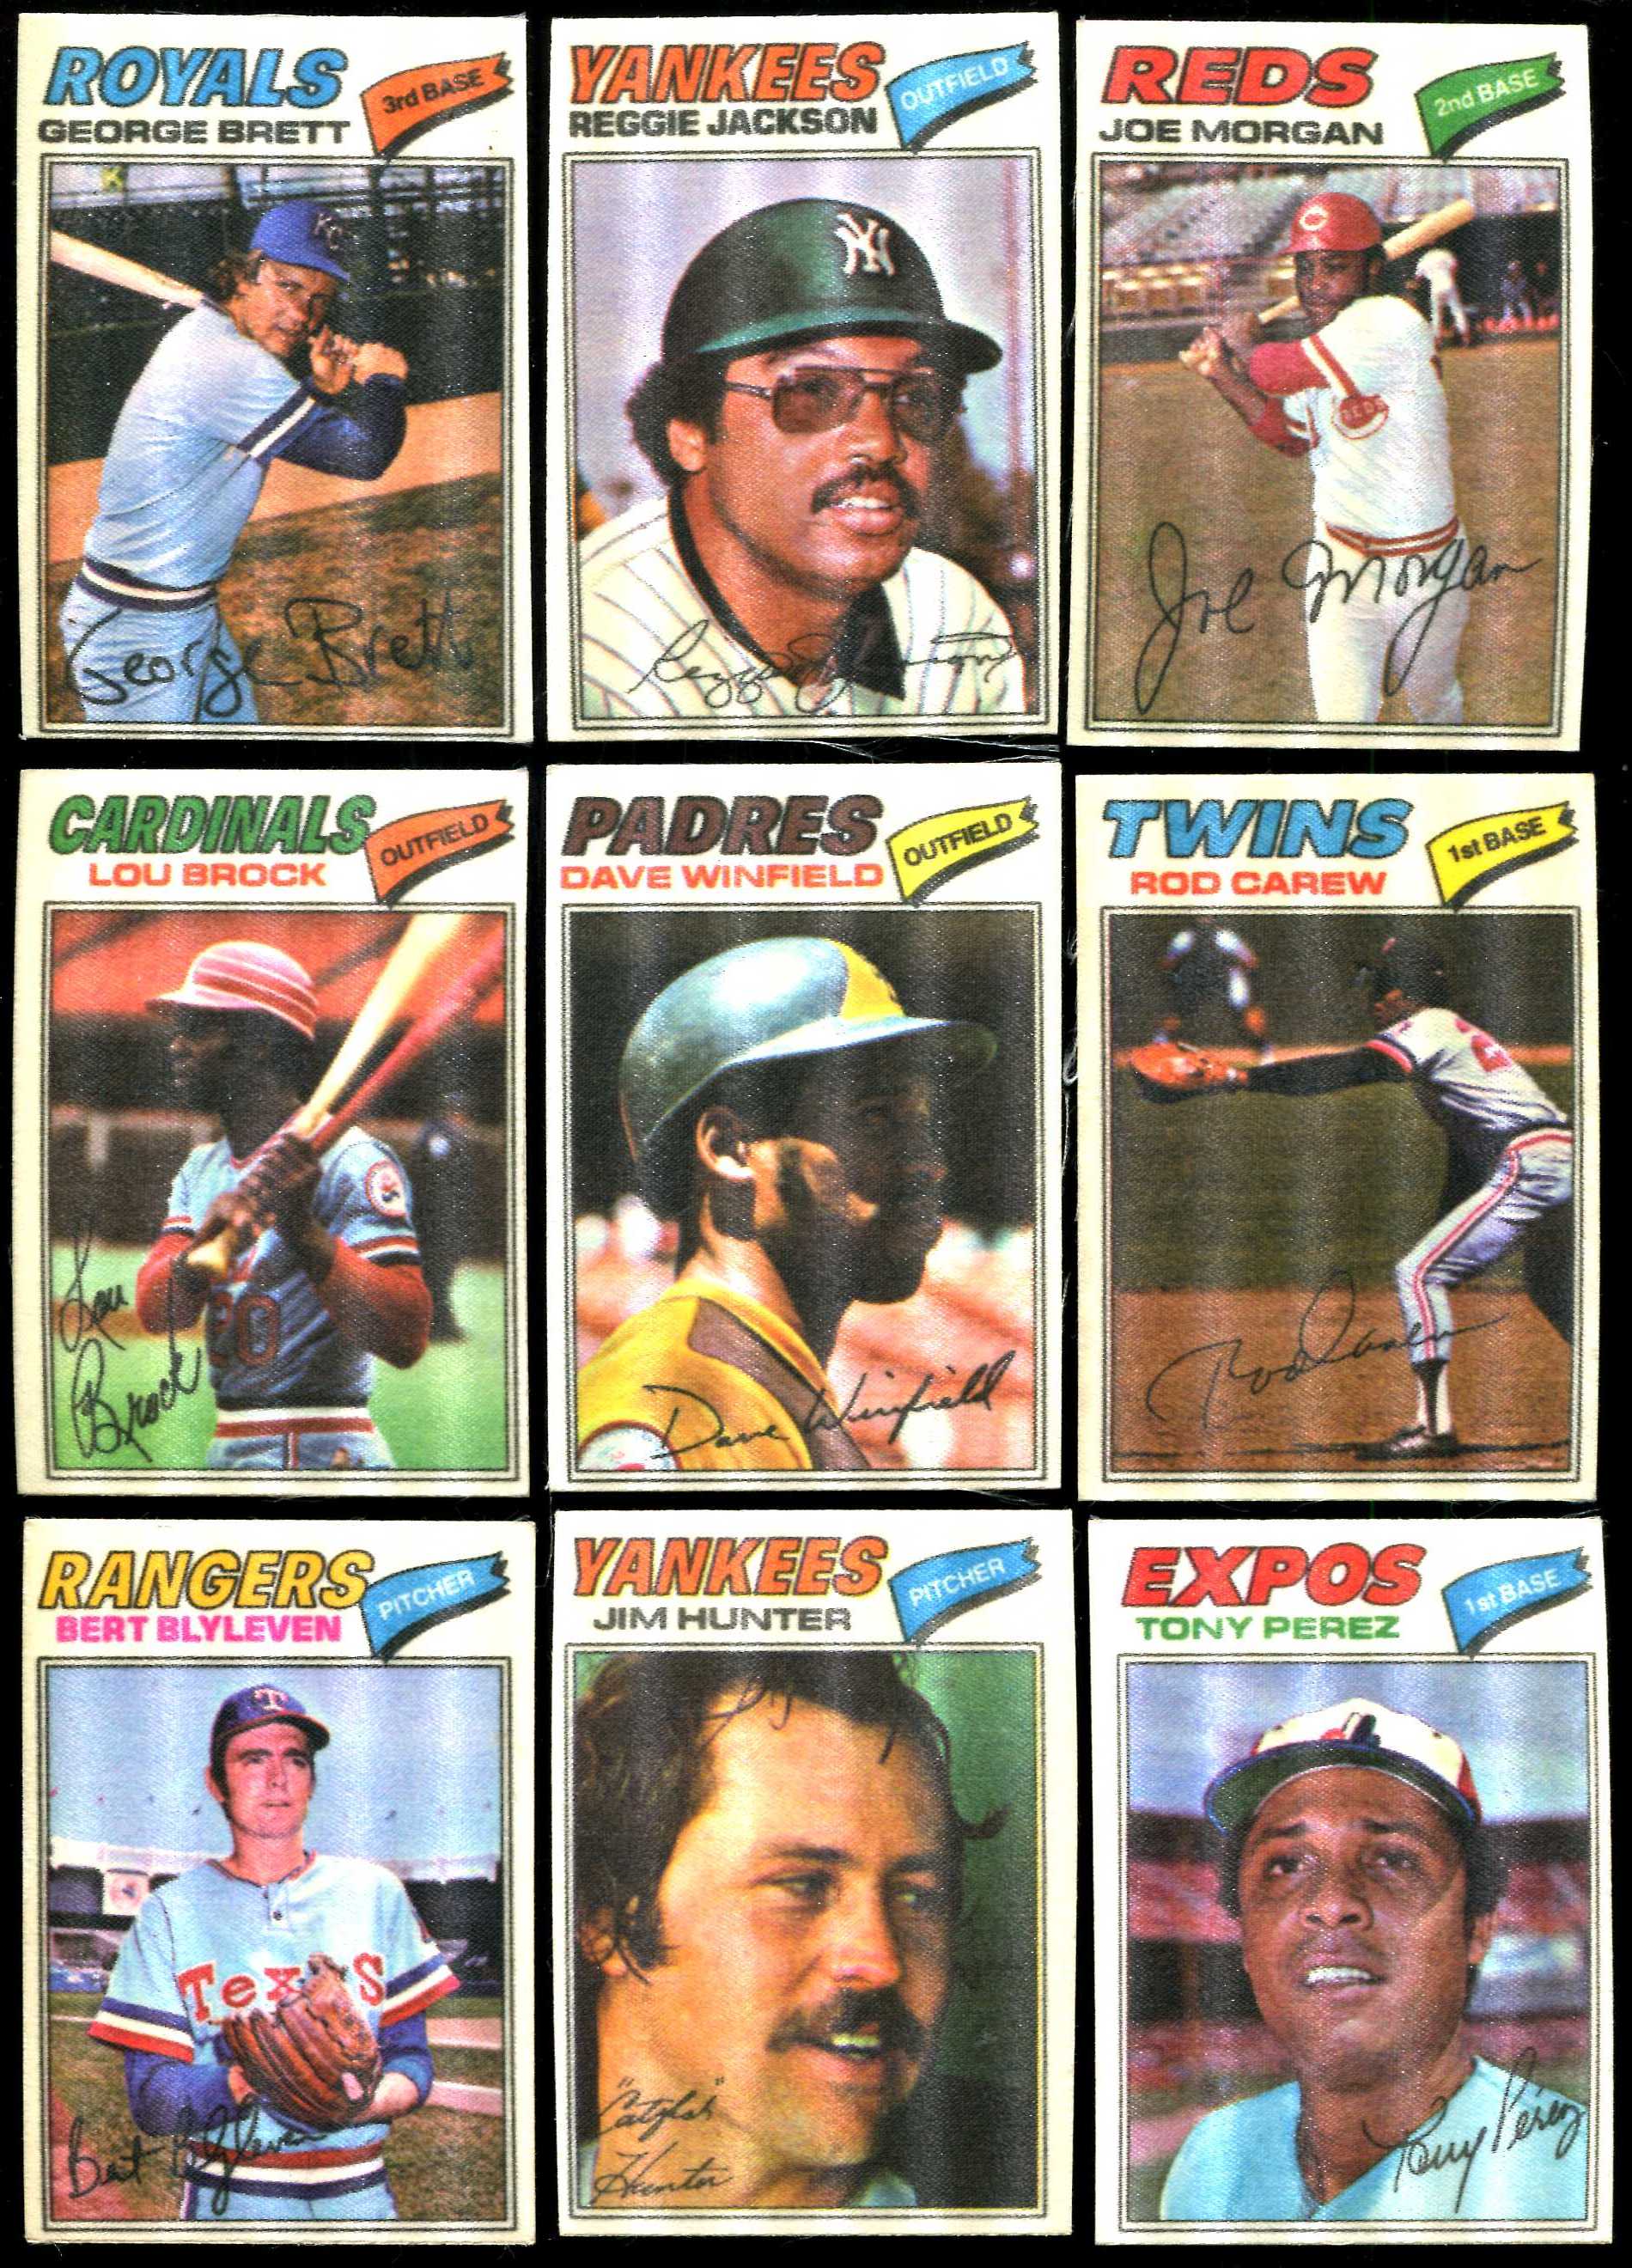 1977 Topps Cloth Stickers Baseball 5 Bert Blyleven - Beckett News